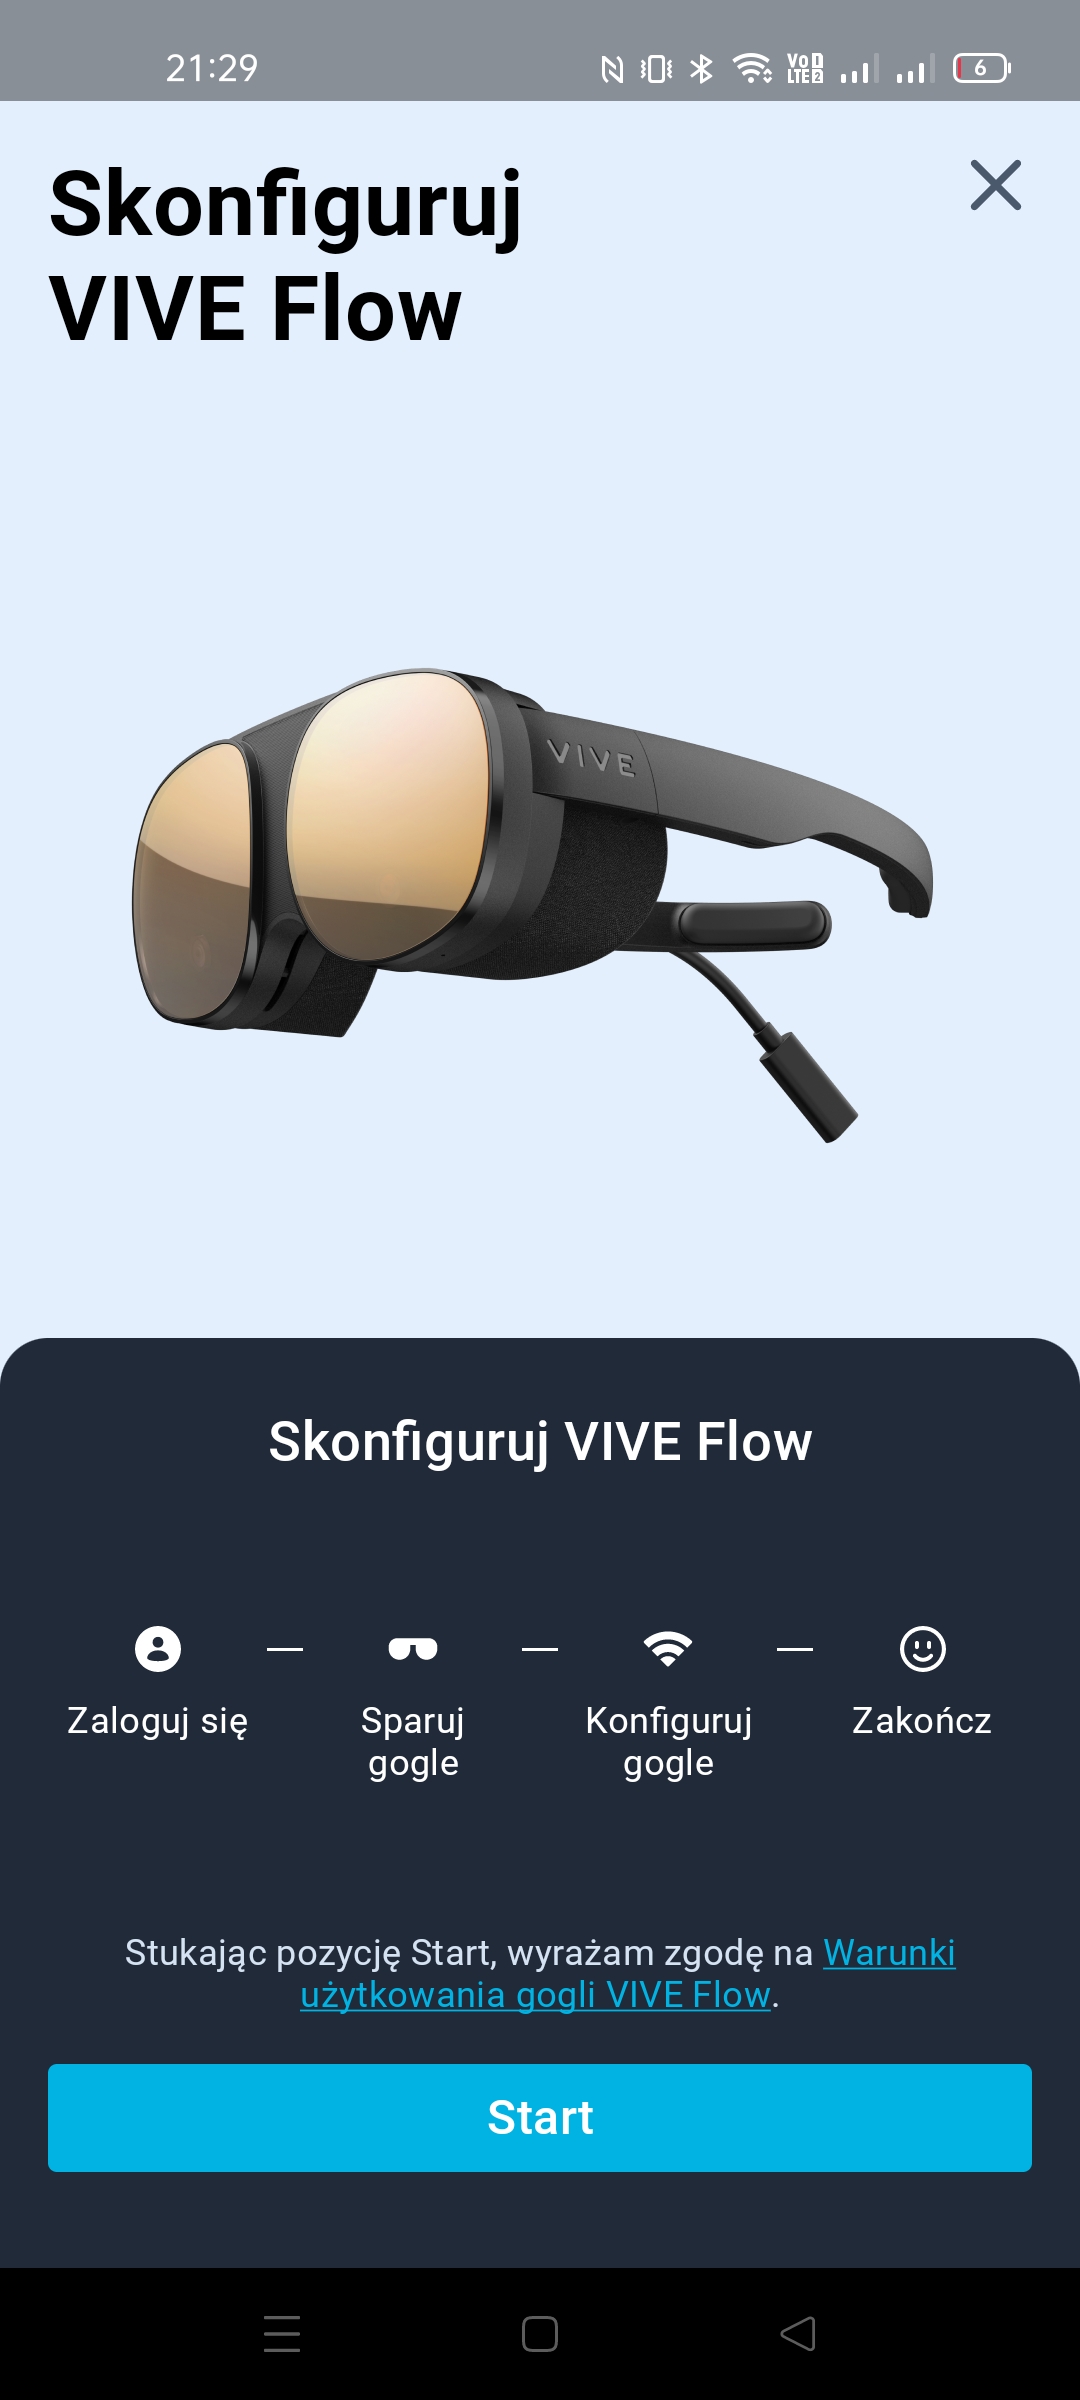 Recenzja HTC VIVE Flow - VR w wielkim rozkroku